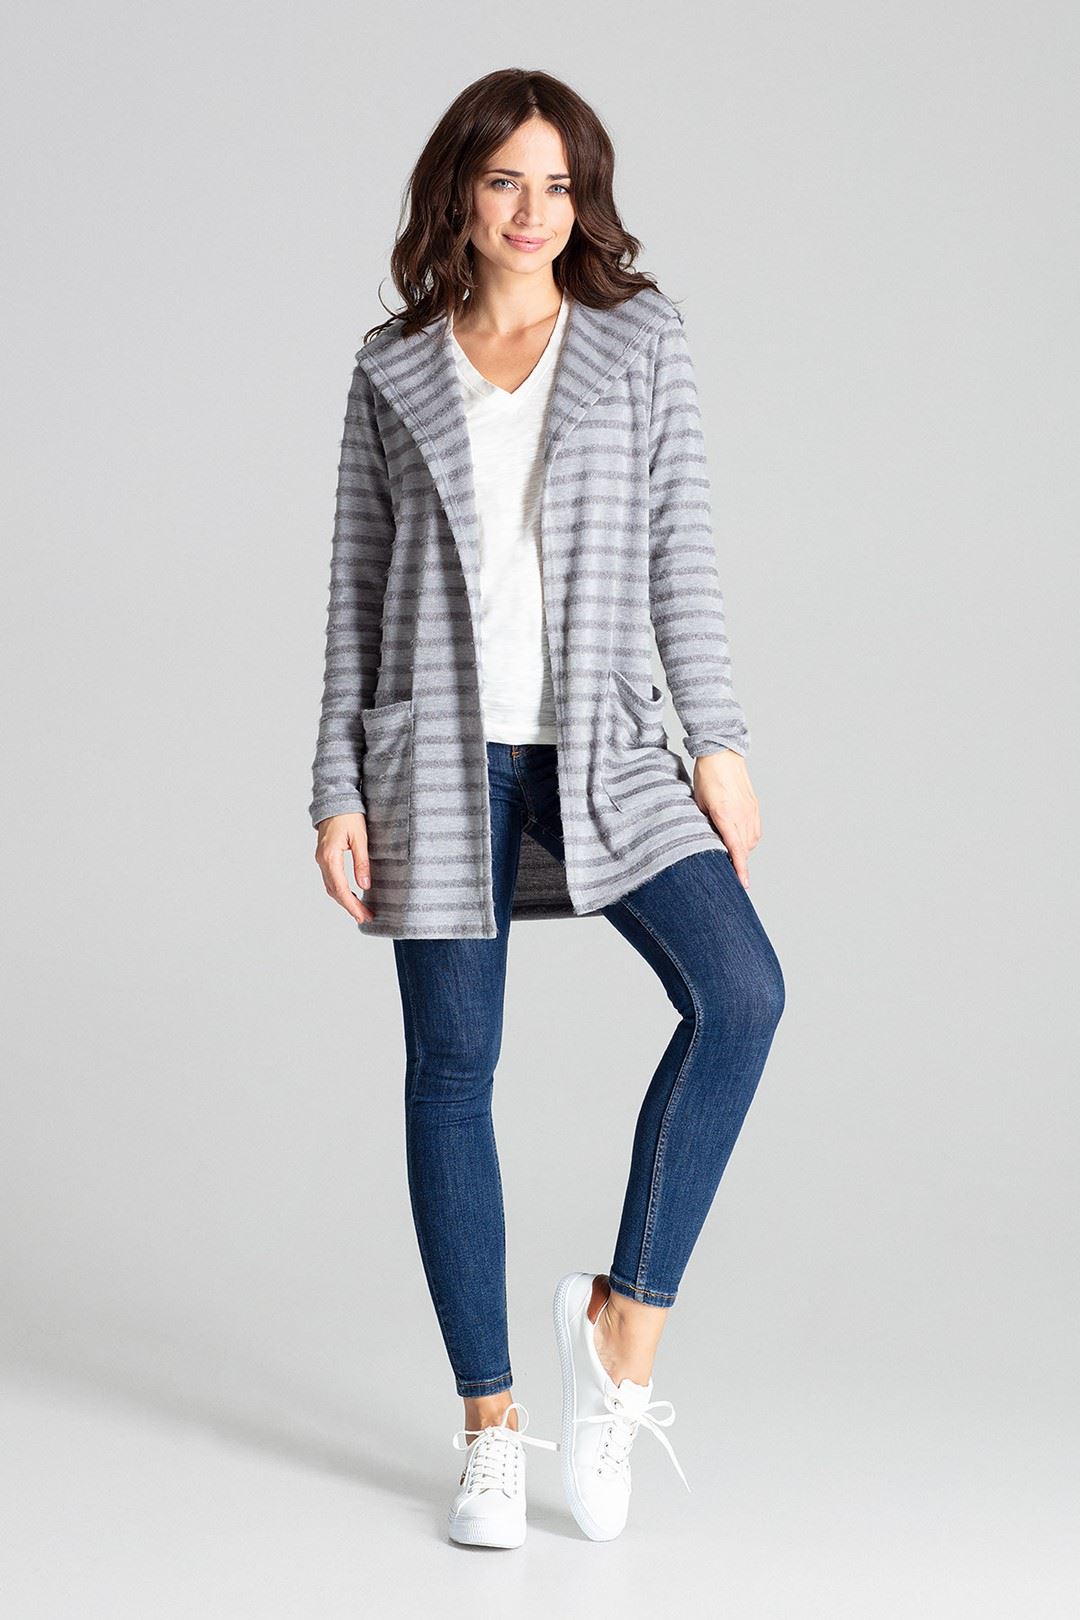 Sweater L070 Grey L/XL